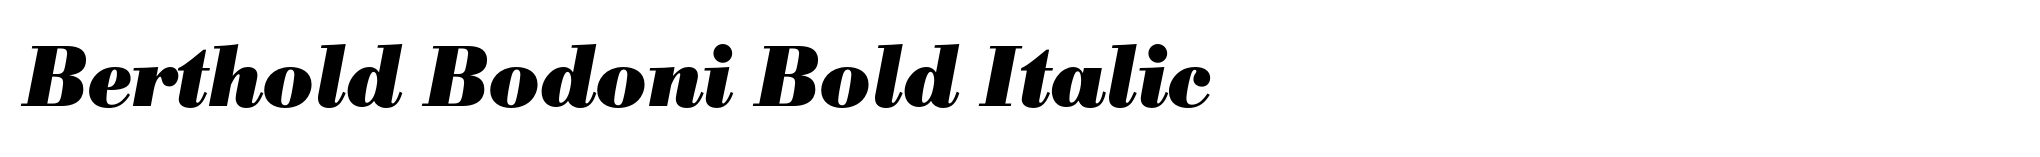 Berthold Bodoni Bold Italic image